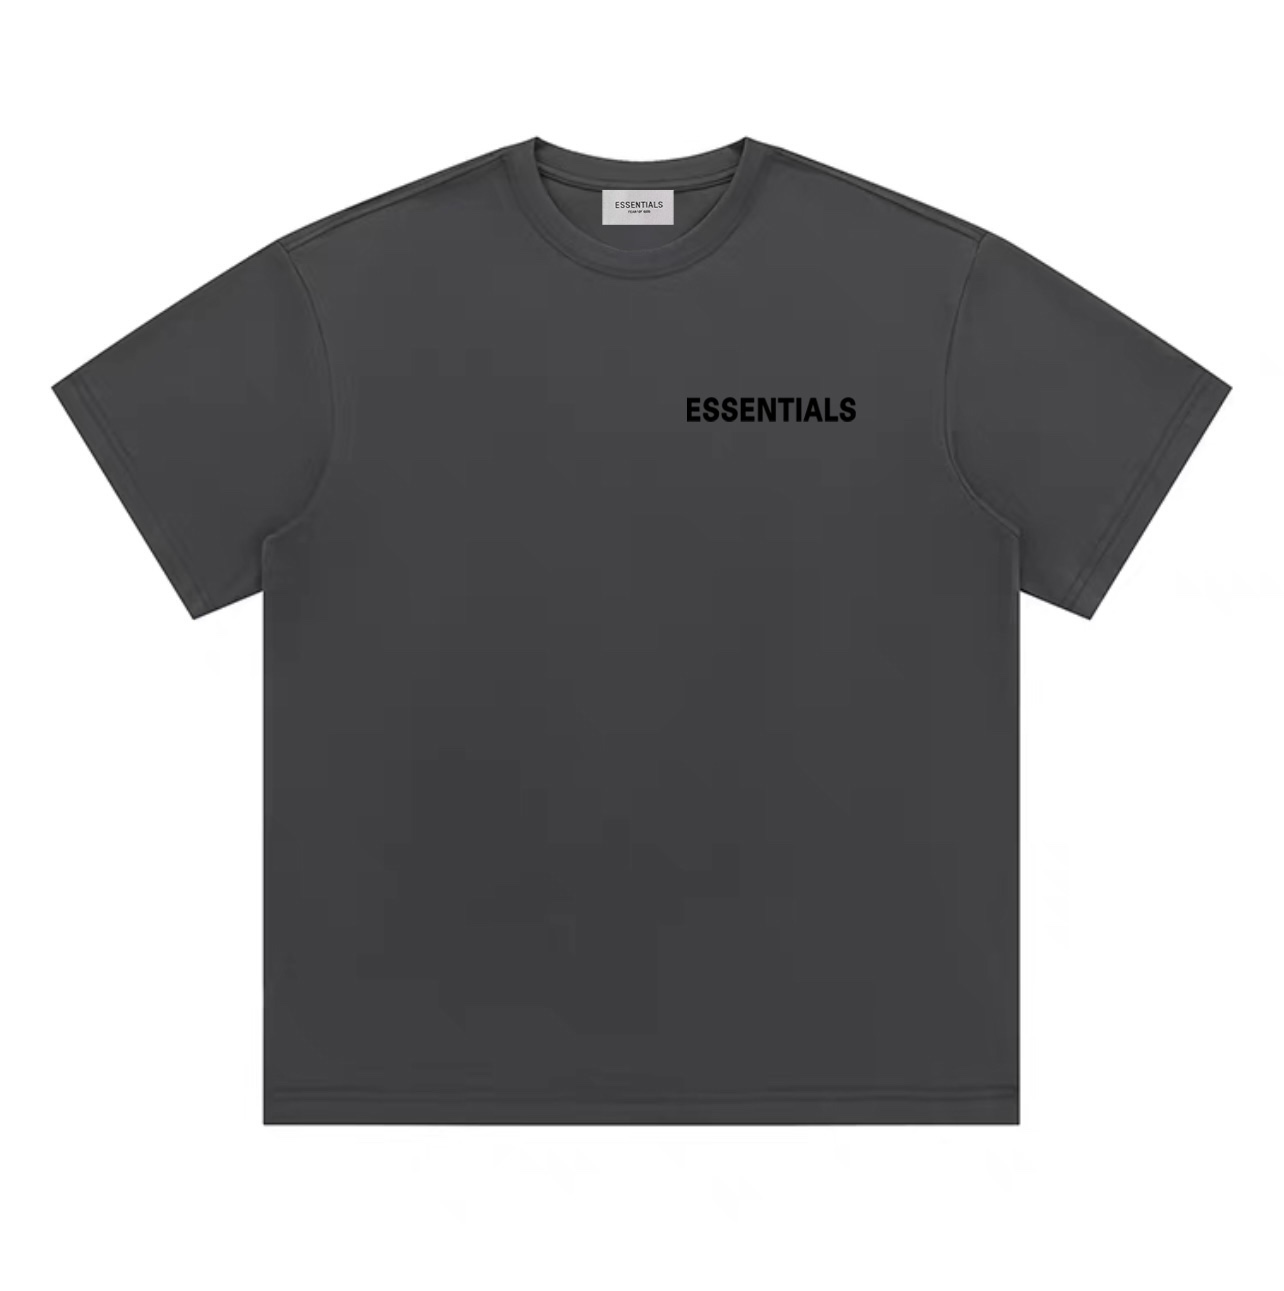 ESSENTIALS Kleidung T-Shirt Schwarz Grau Weiß Drucken Unisex Baumwolle Essential Kurzarm